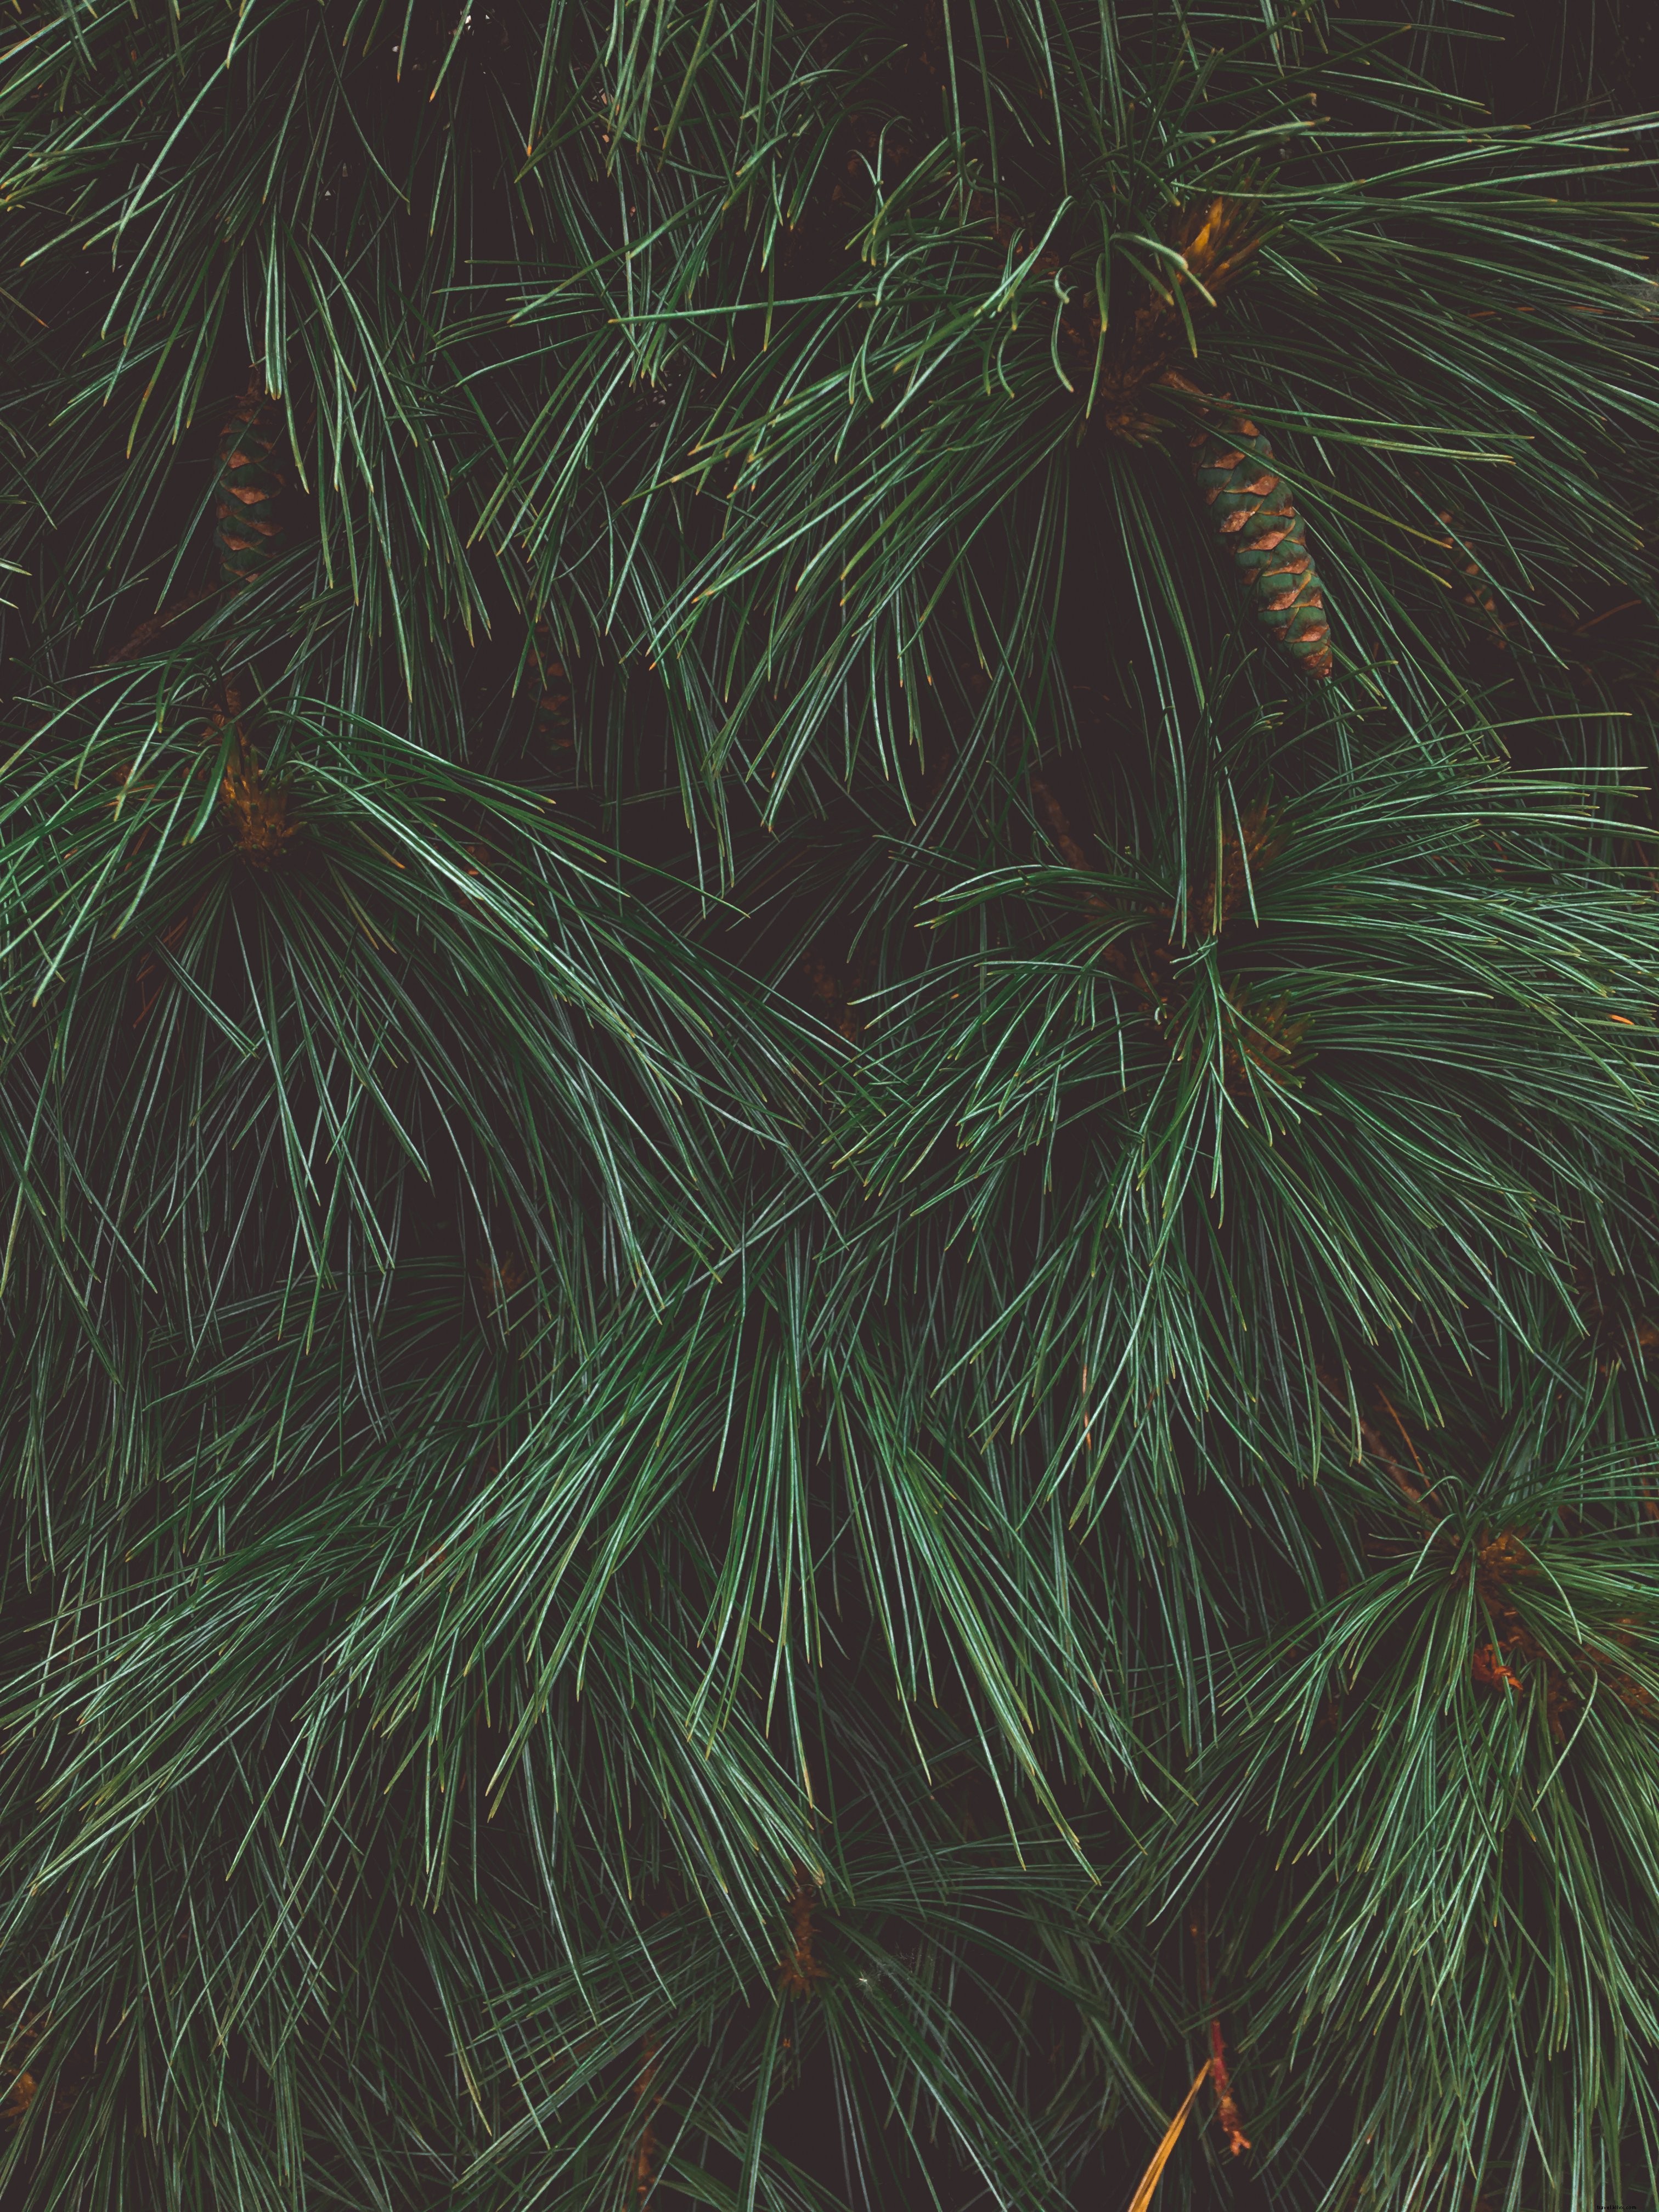 松葉のテクスチャを示す松の木のクローズアップ写真